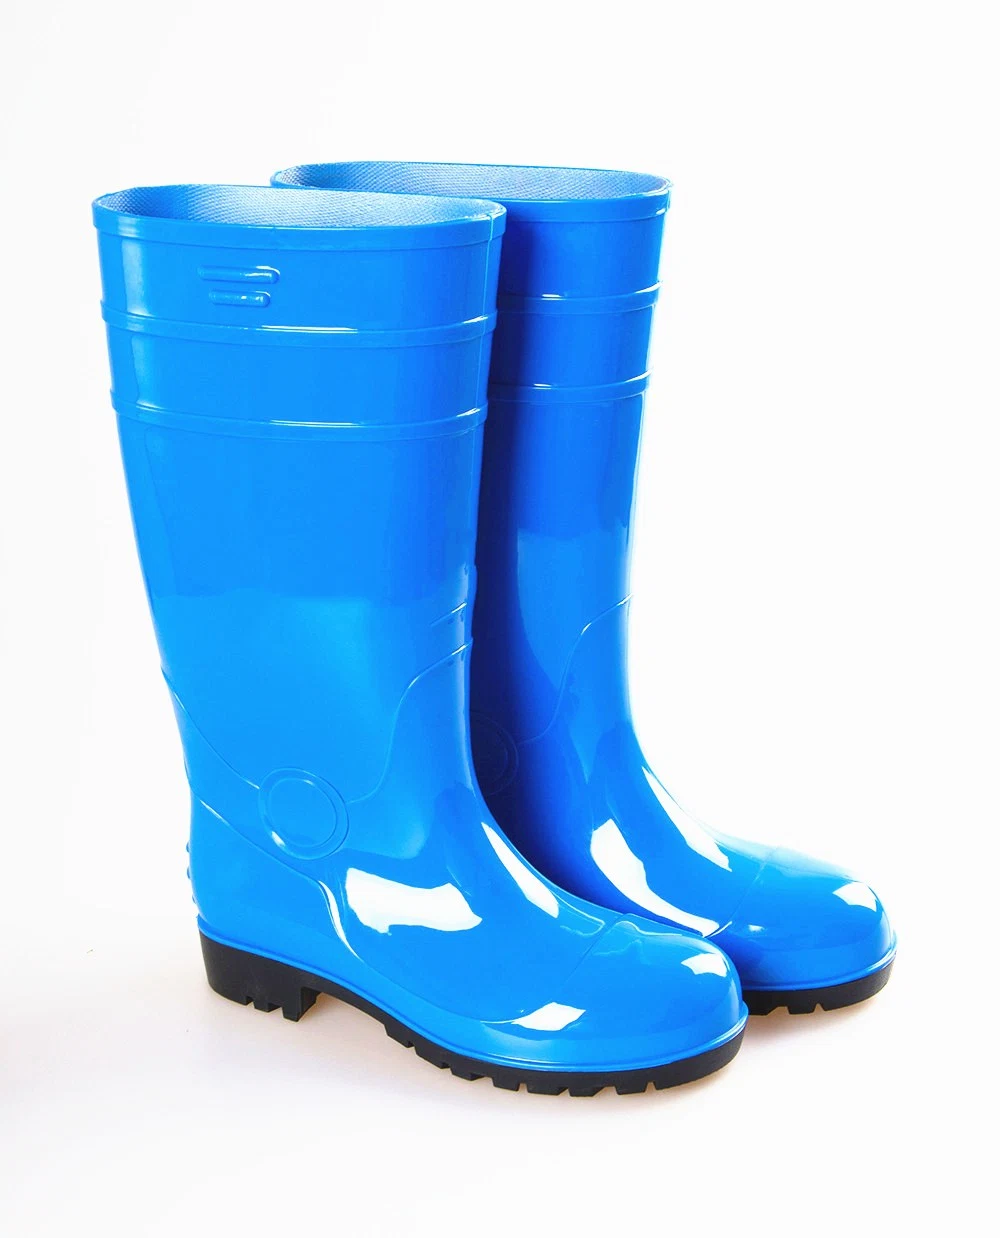 General Rain Boot Rain Shoes PVC Rainboots in Guangzhou